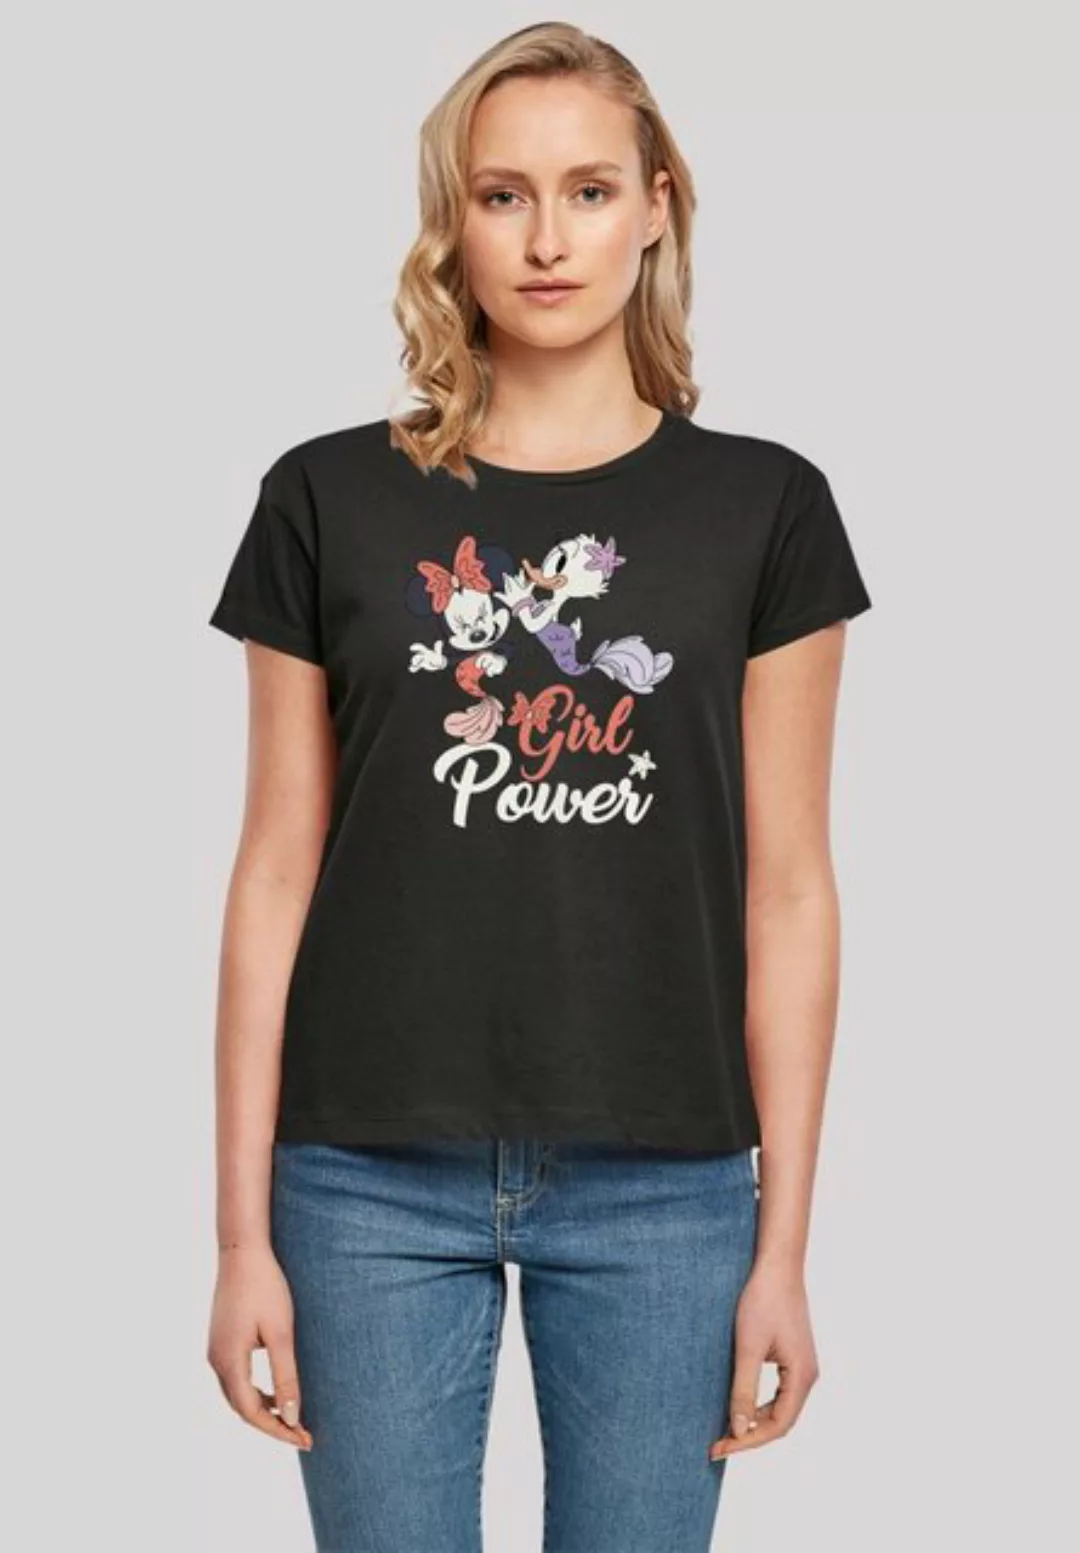 F4NT4STIC T-Shirt Disney Minnie Maus & Daisy Girl Power Premium Qualität günstig online kaufen